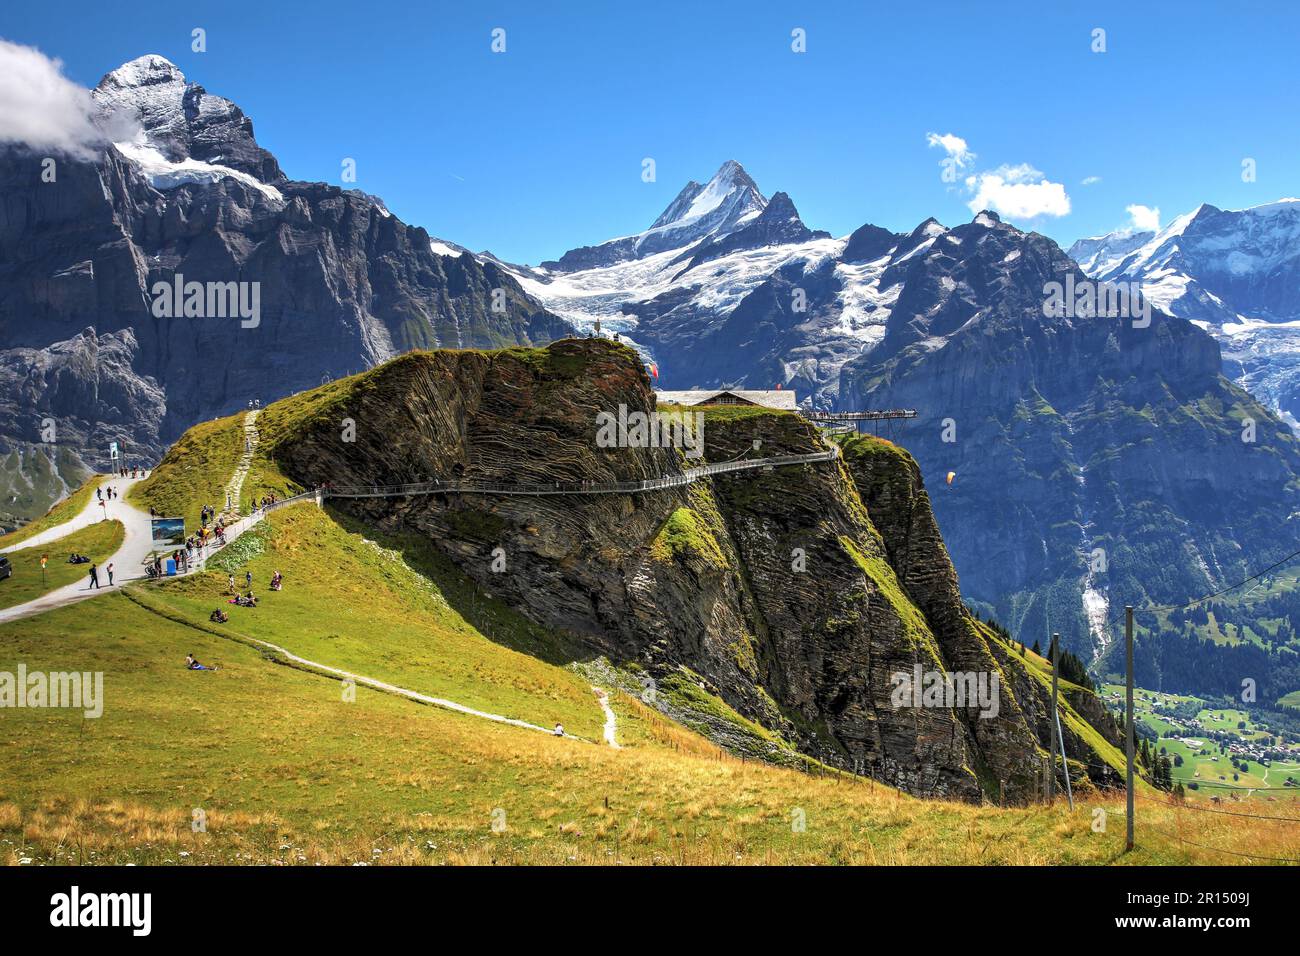 Sommerblick an der Grindelwald-ersten Station über dem Ferienort Grindelwald mit dem Cliff Walk vor dem Hintergrund der Berner Alpen und des Schreckhorn-Gipfels. Stockfoto